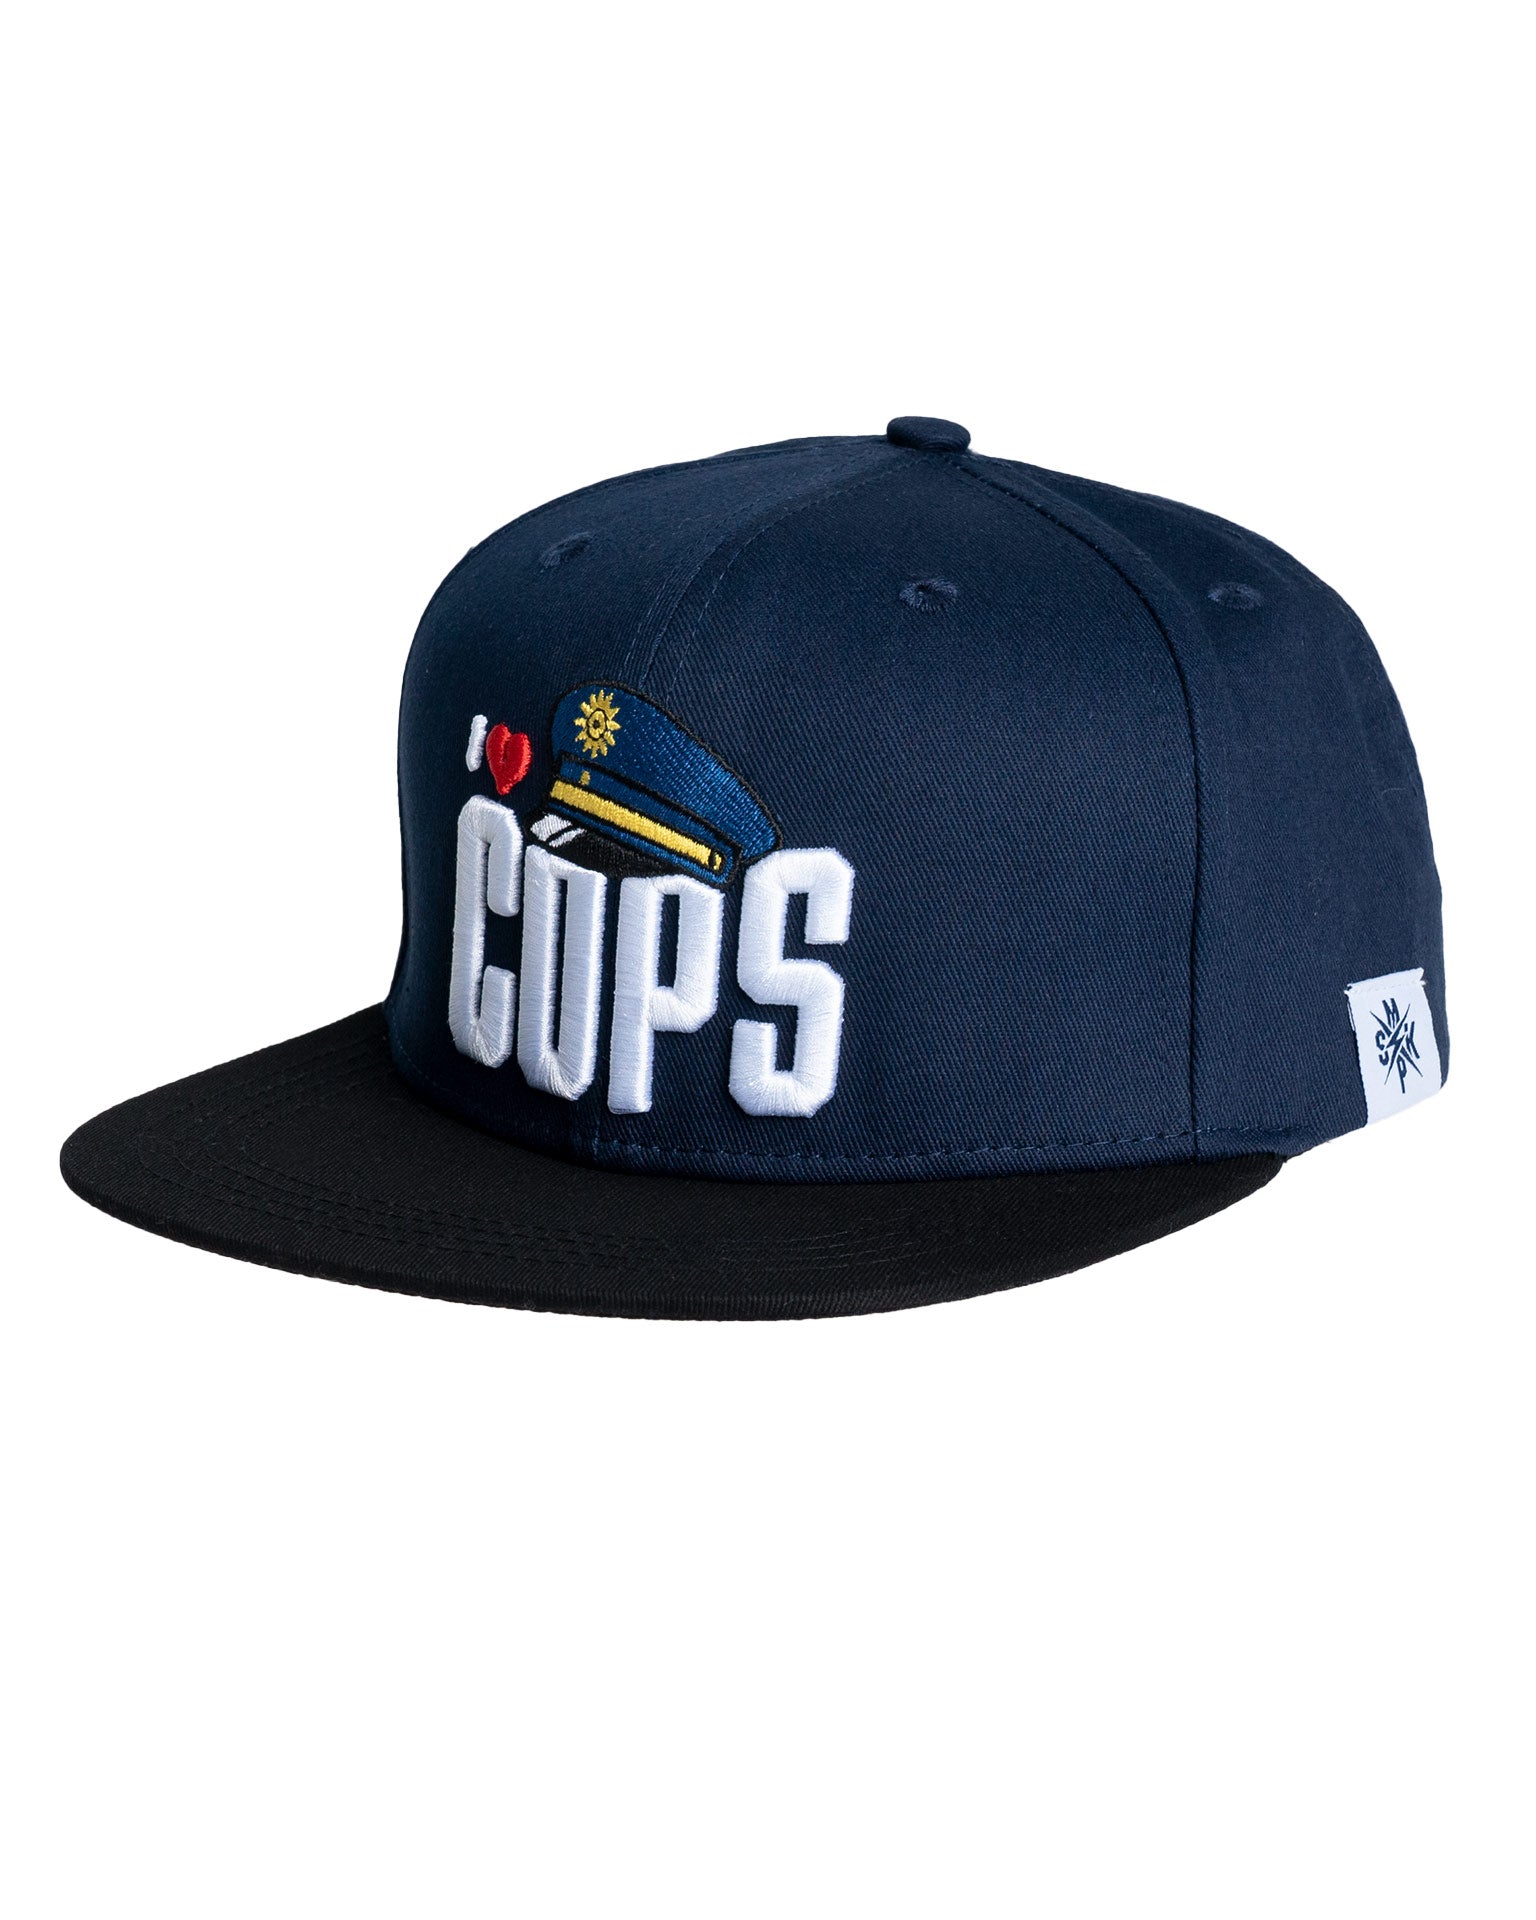 Snapback Cap | I "Love" Cops